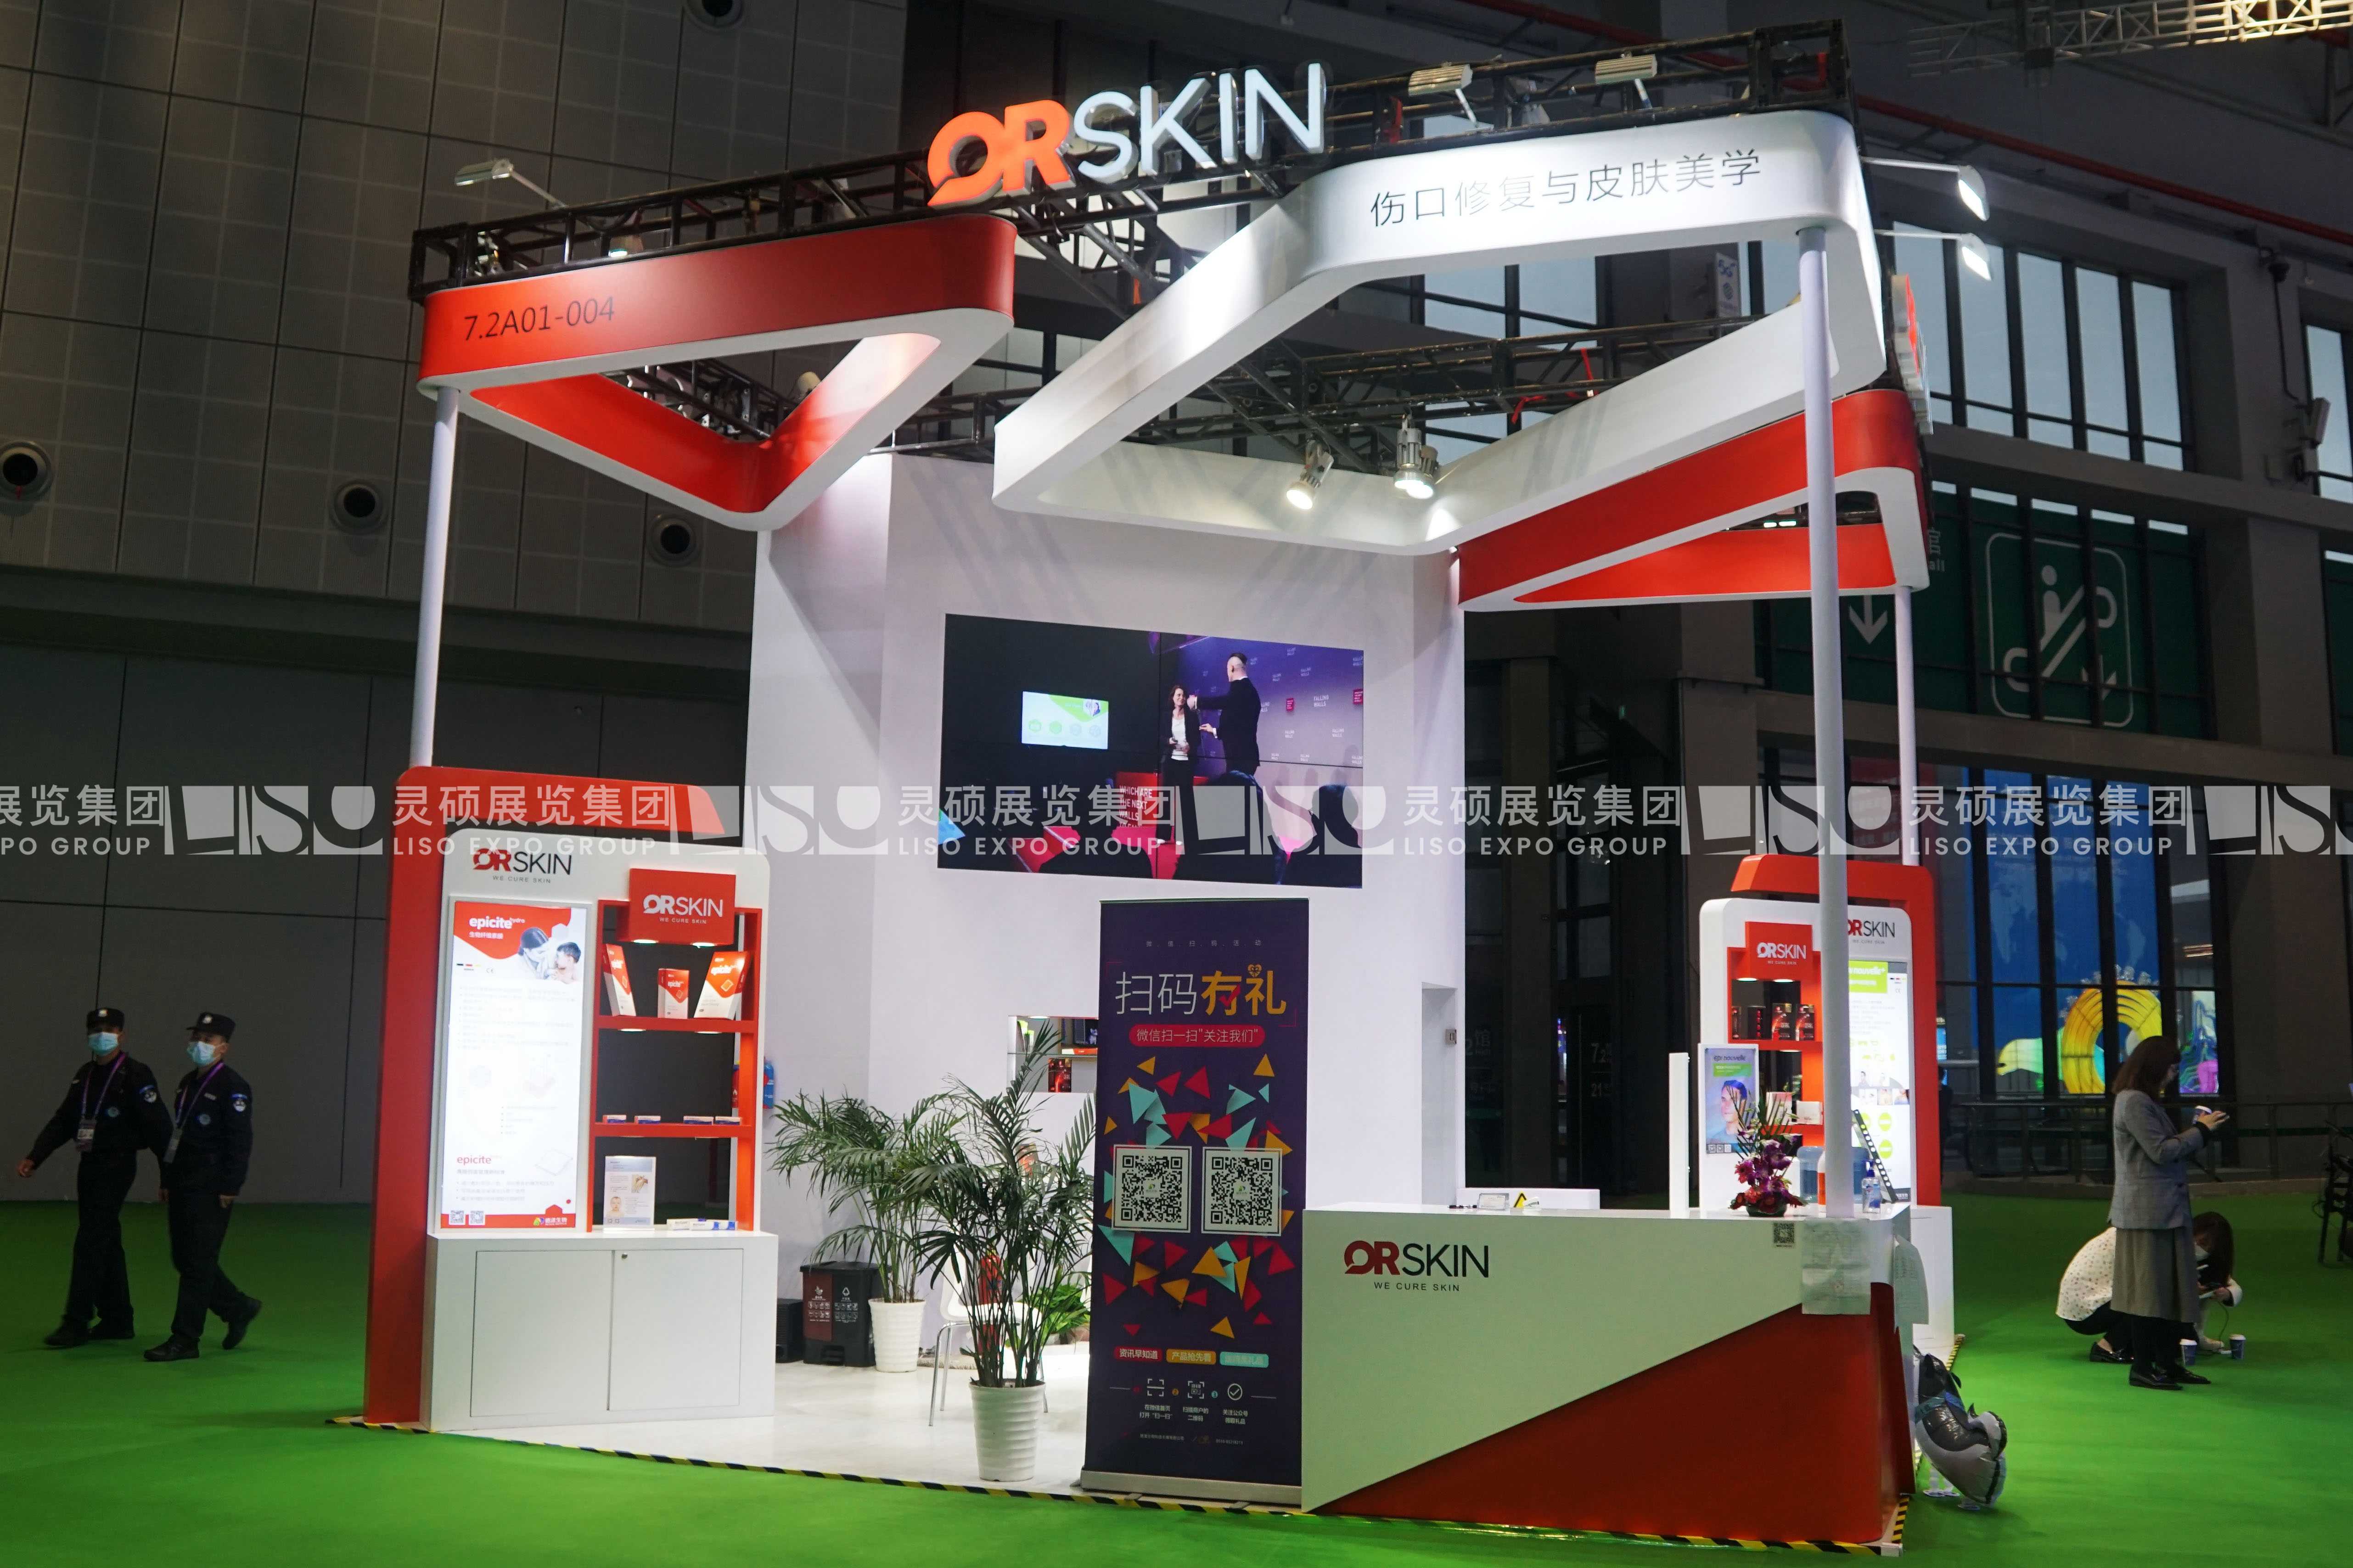 QRSKIN-第四届进博会展台设计案例